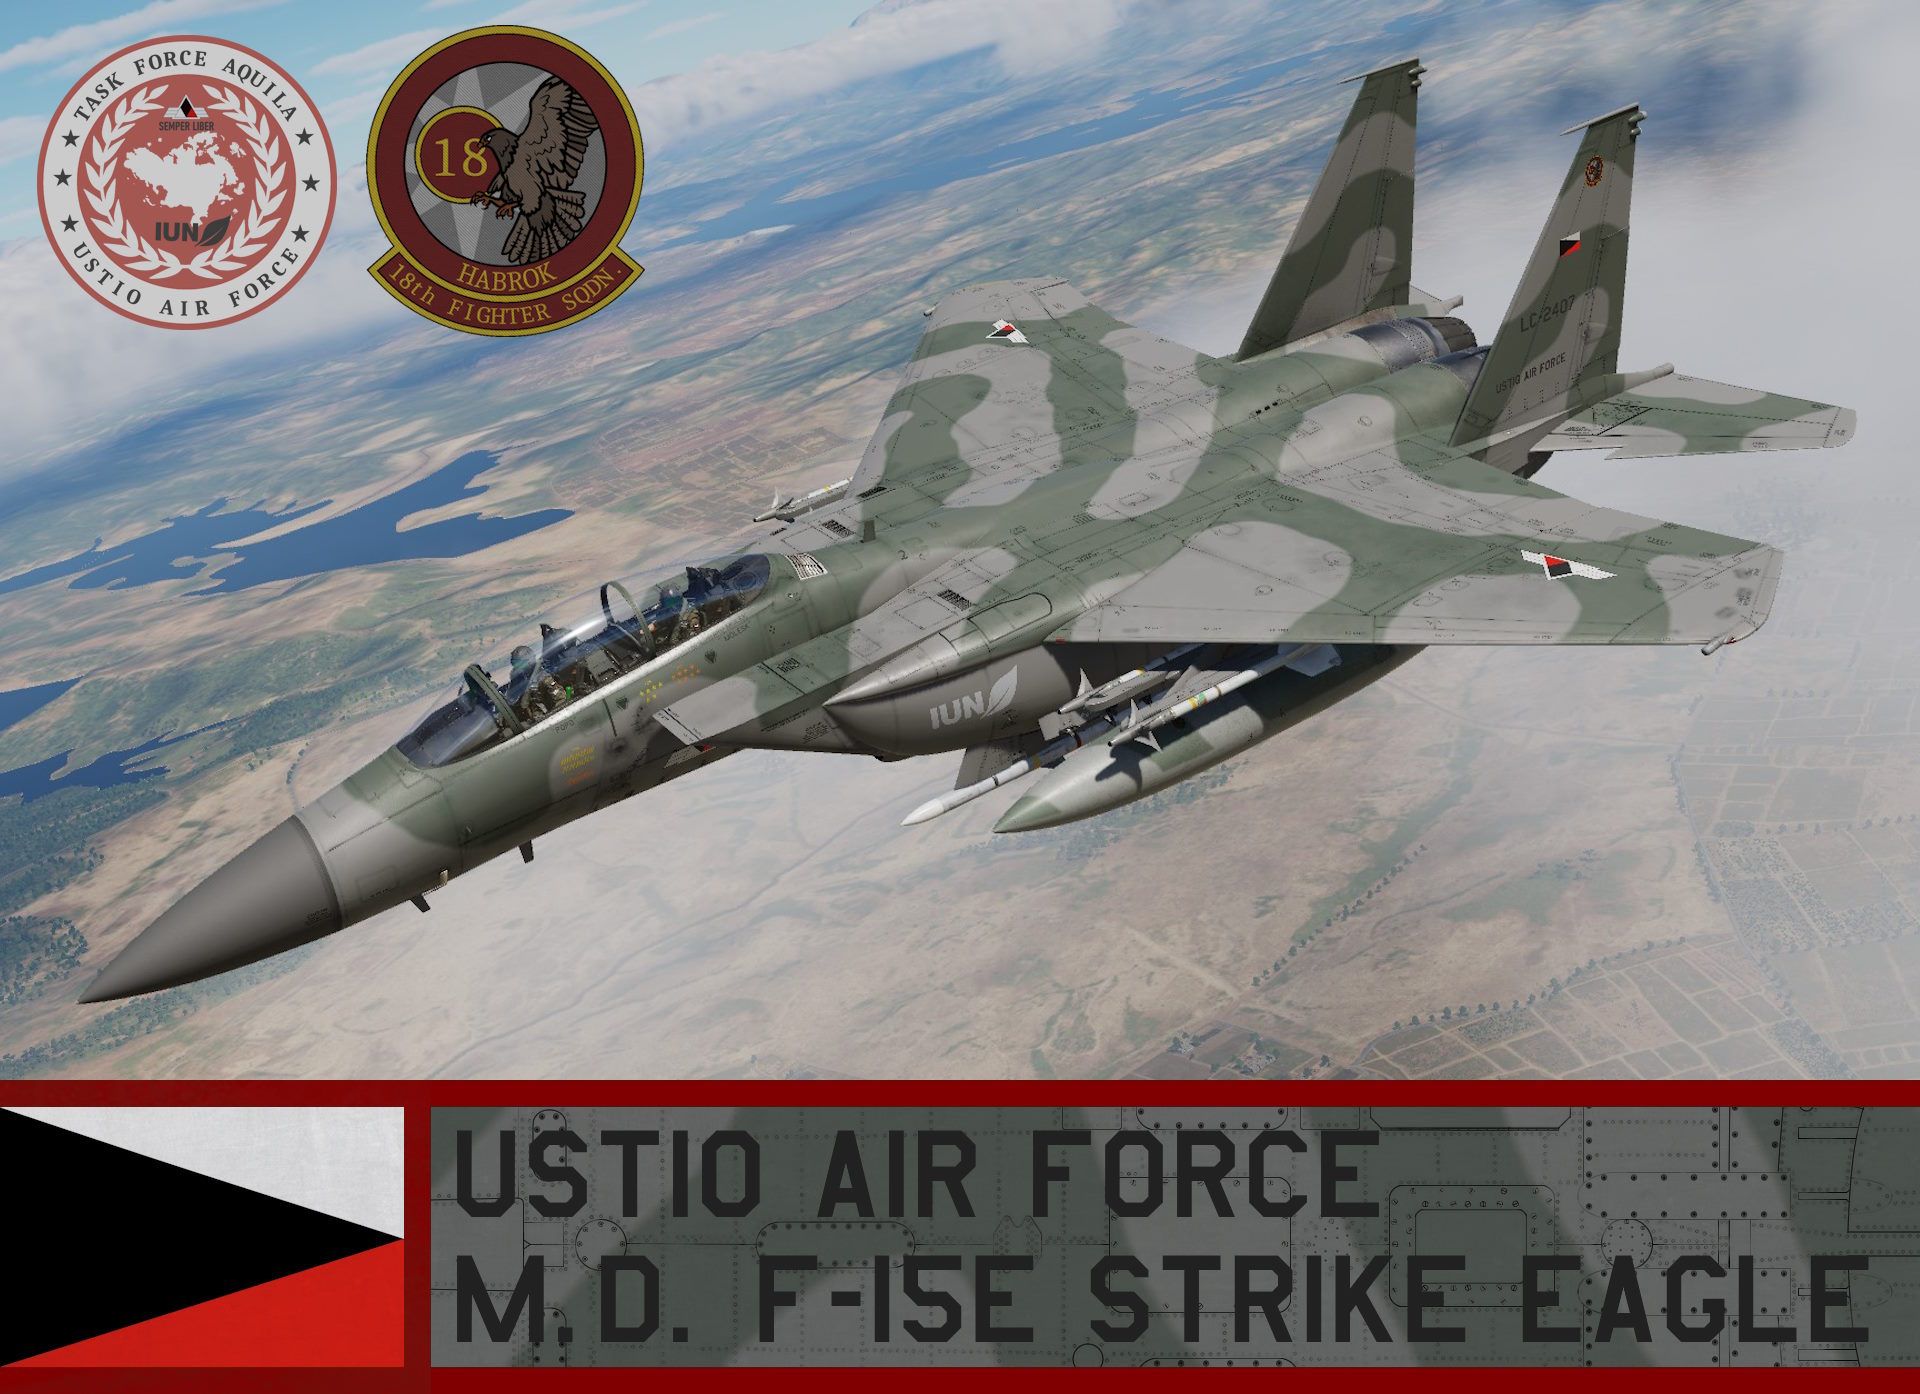 Ustio Air Force F-15E Strike Eagle - Ace Combat 7 (IUN/18th TFS)